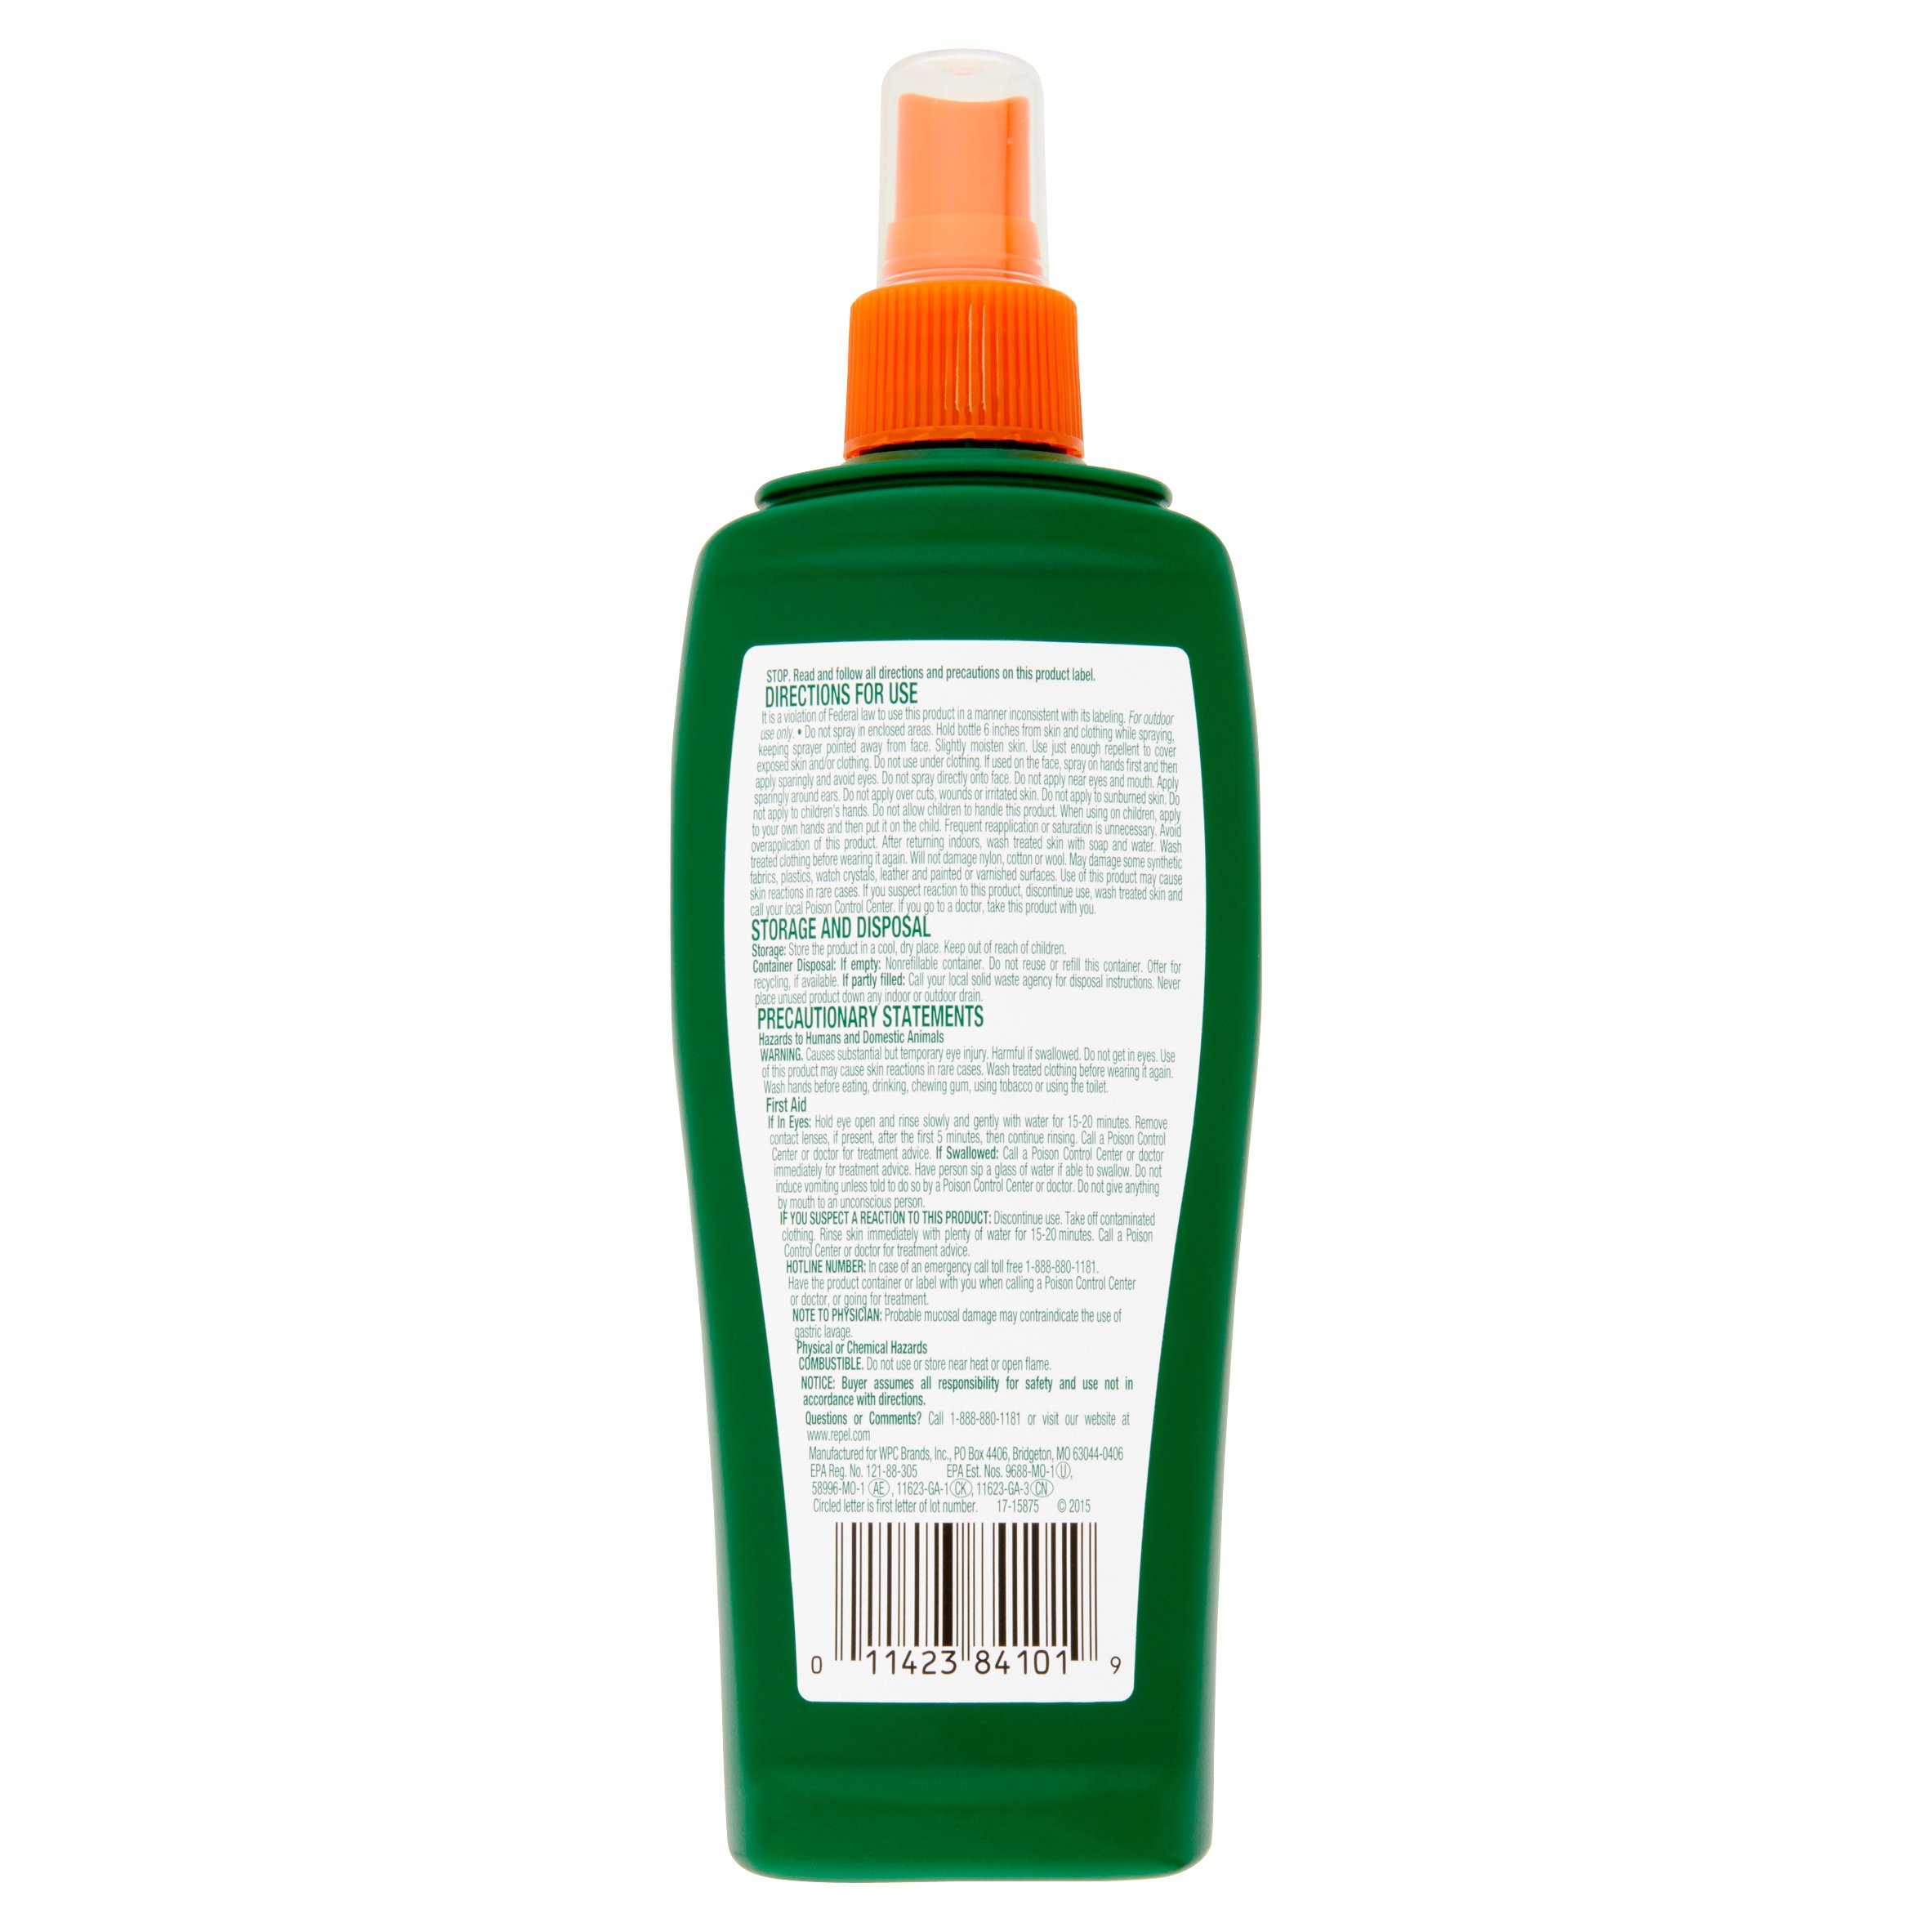 Repel Insect Repellent Sportsmen Max Formula Spray Pump 40% Deet, 7.5-fl oz - image 3 of 10